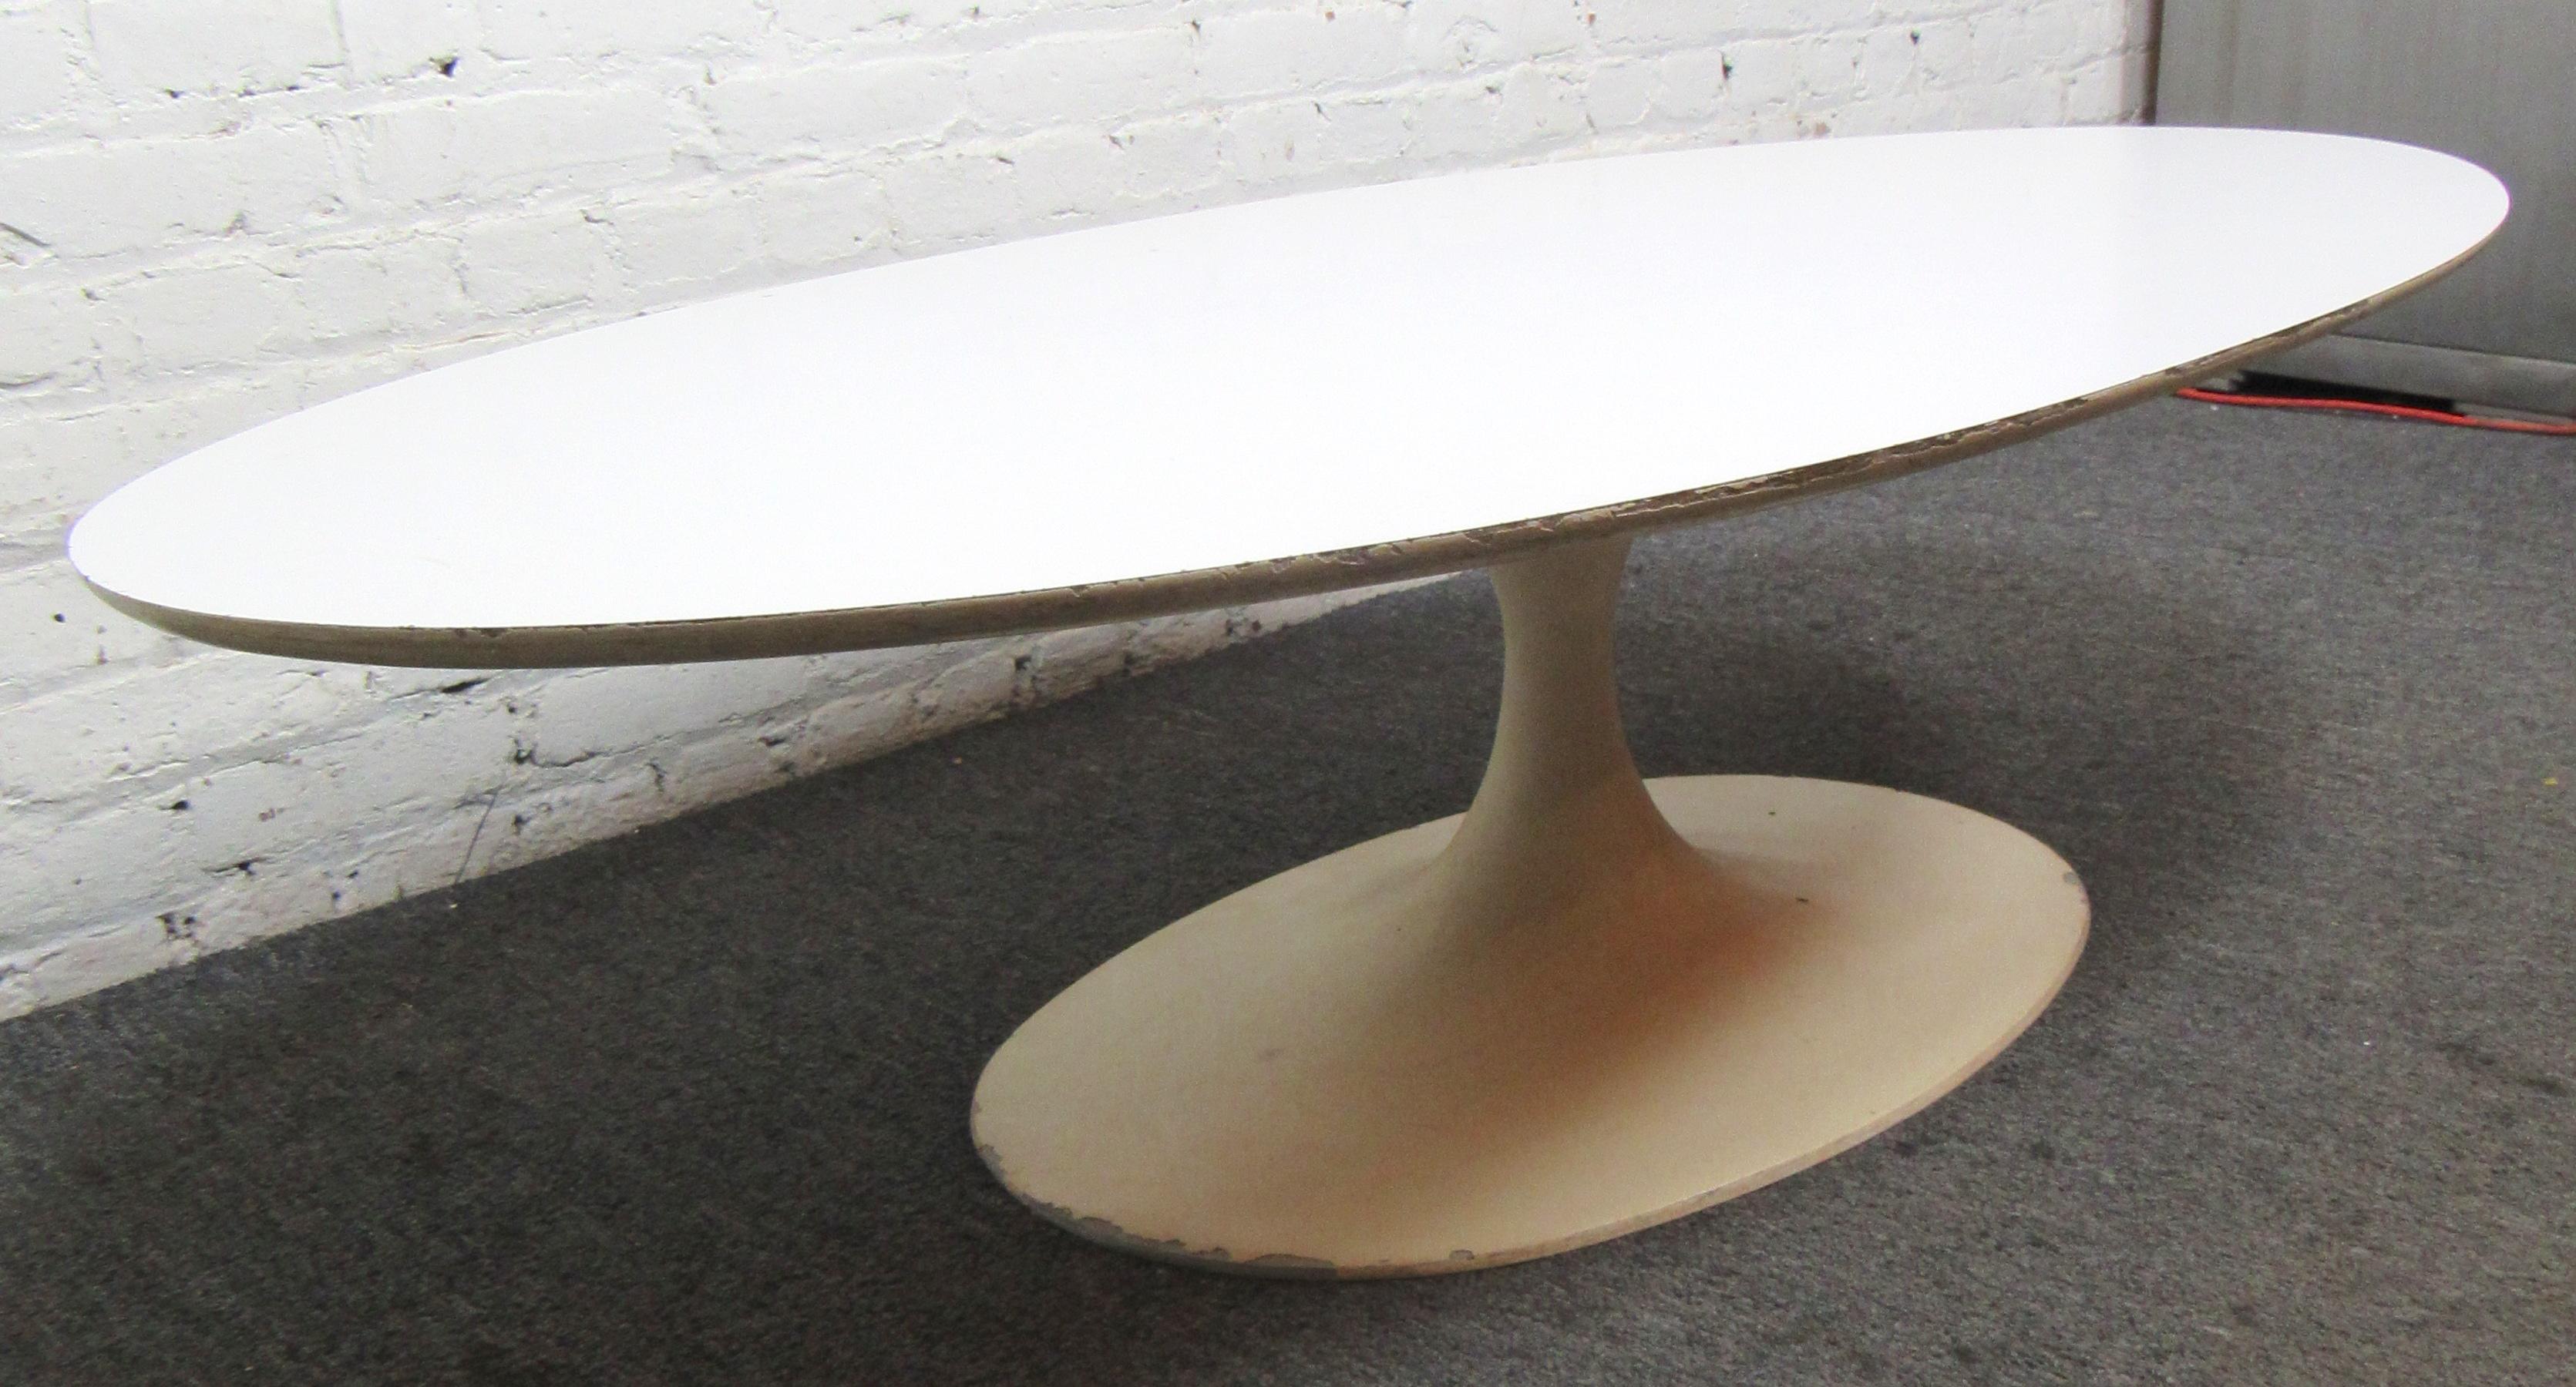 Eero Saarinen style coffee table with tulip shape base.
Location: Brooklyn NY.